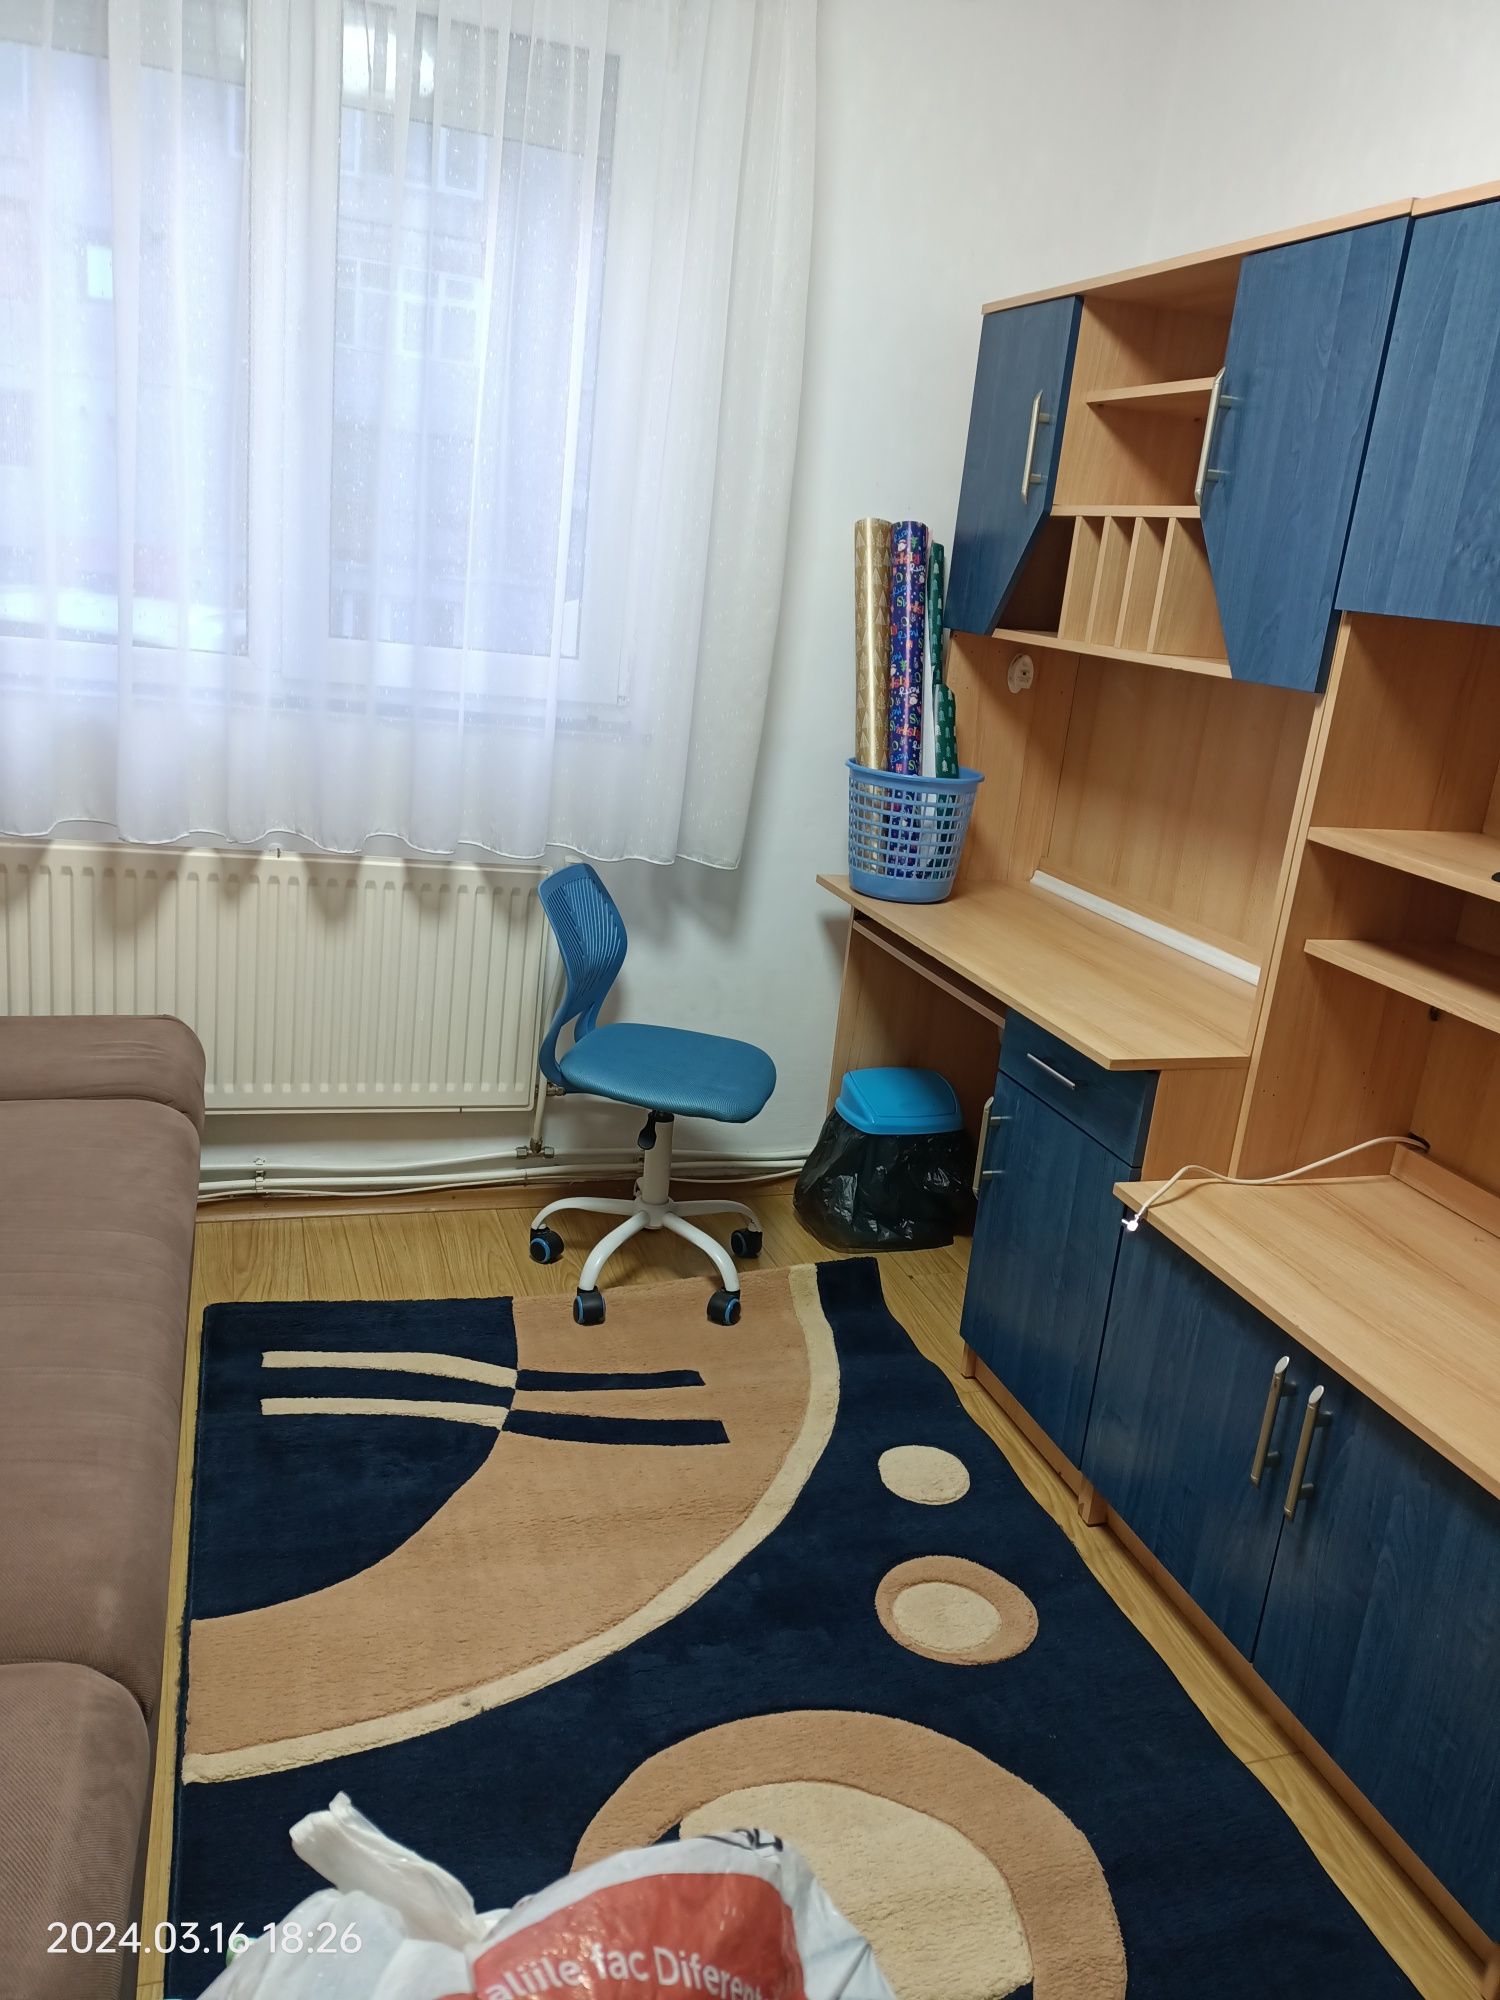 Vând apartament cu 3 camere in Hunedoara strada Intrarea Lanului